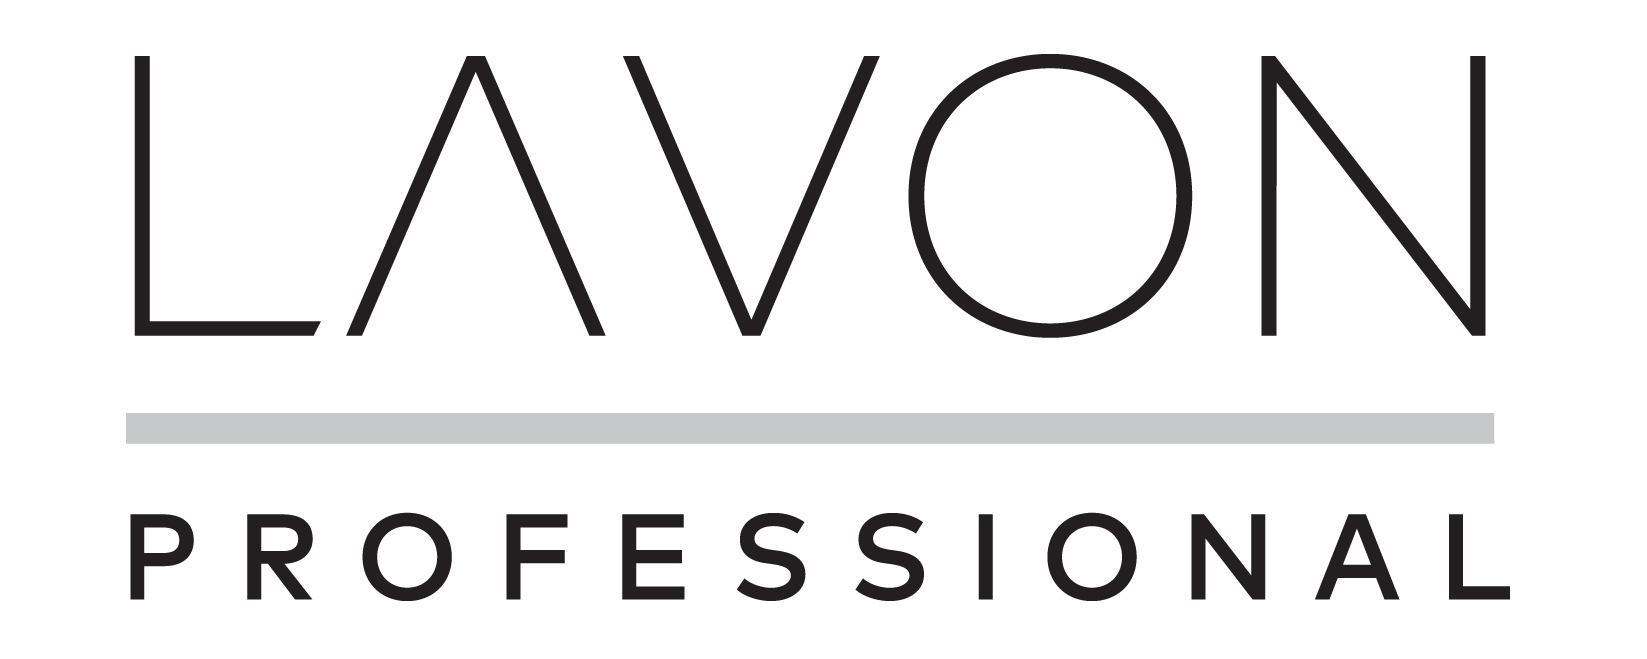 Lavon_Professional-logo-color.png, 34kB